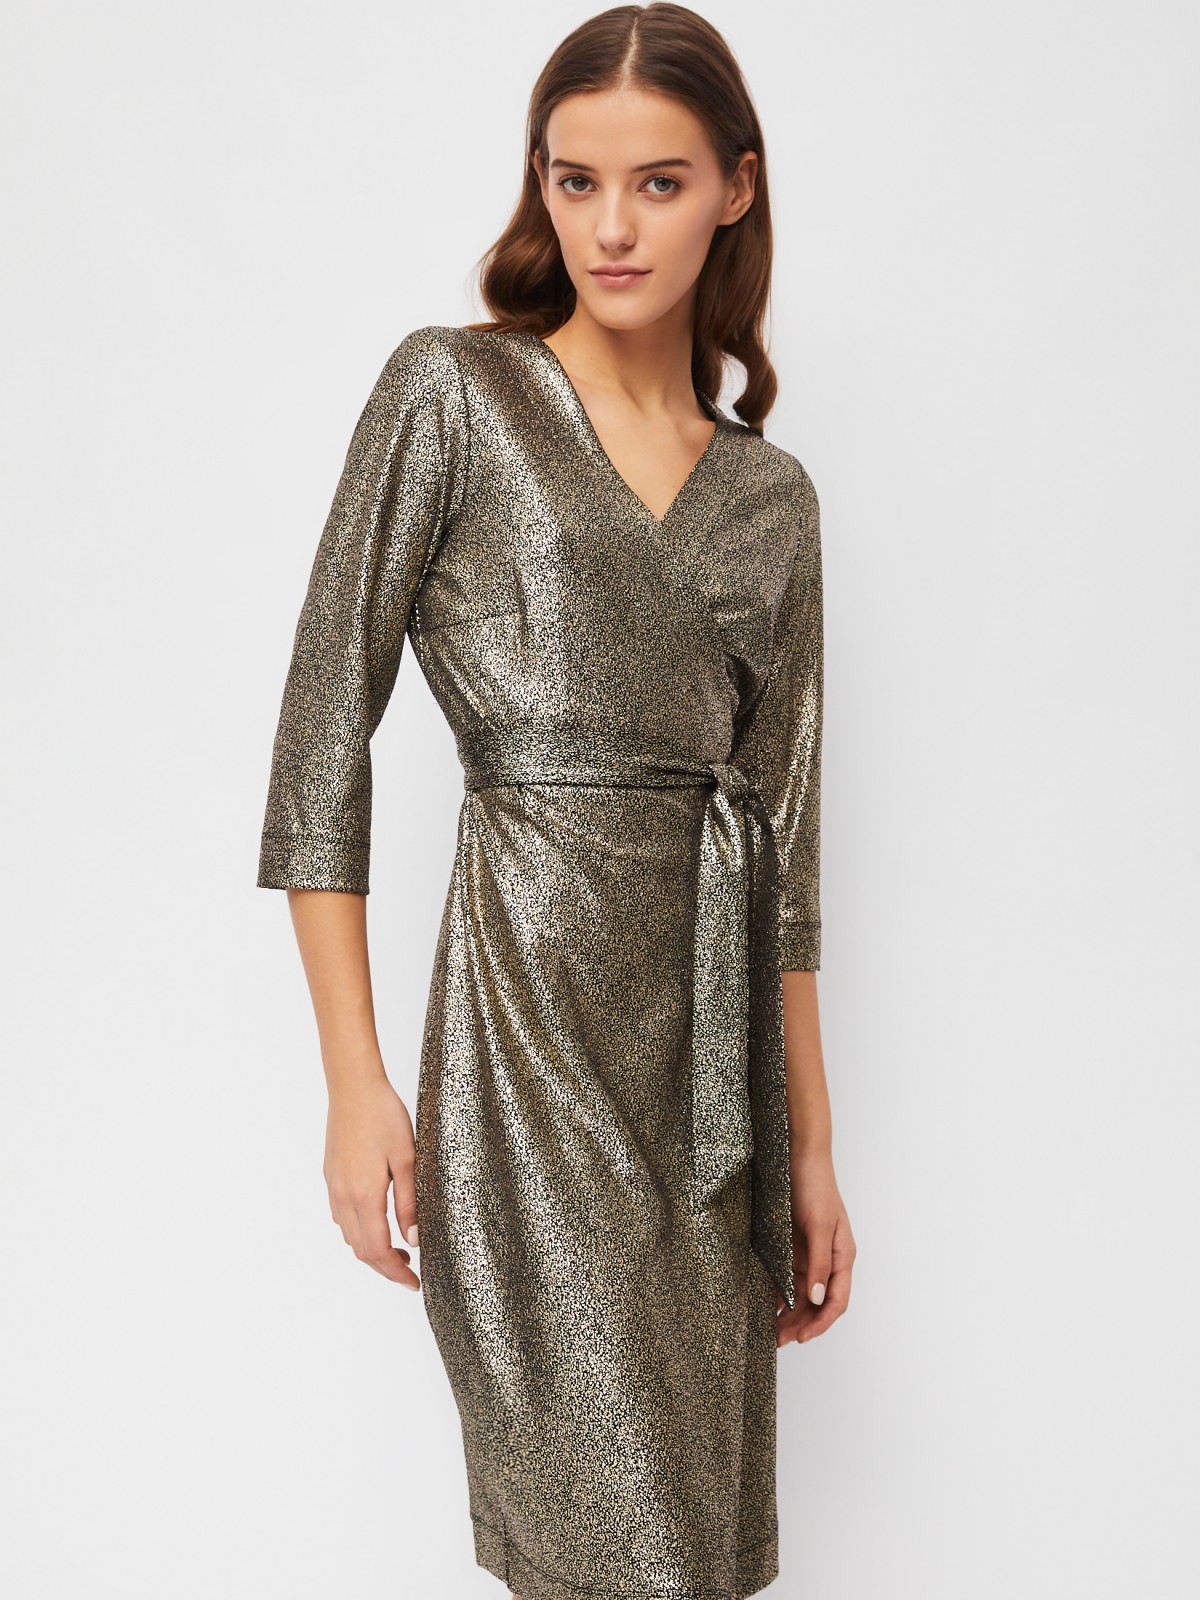 Полуприлегающее платье-халат с запахом и блёстками zolla 023458110073, цвет коричневый, размер S